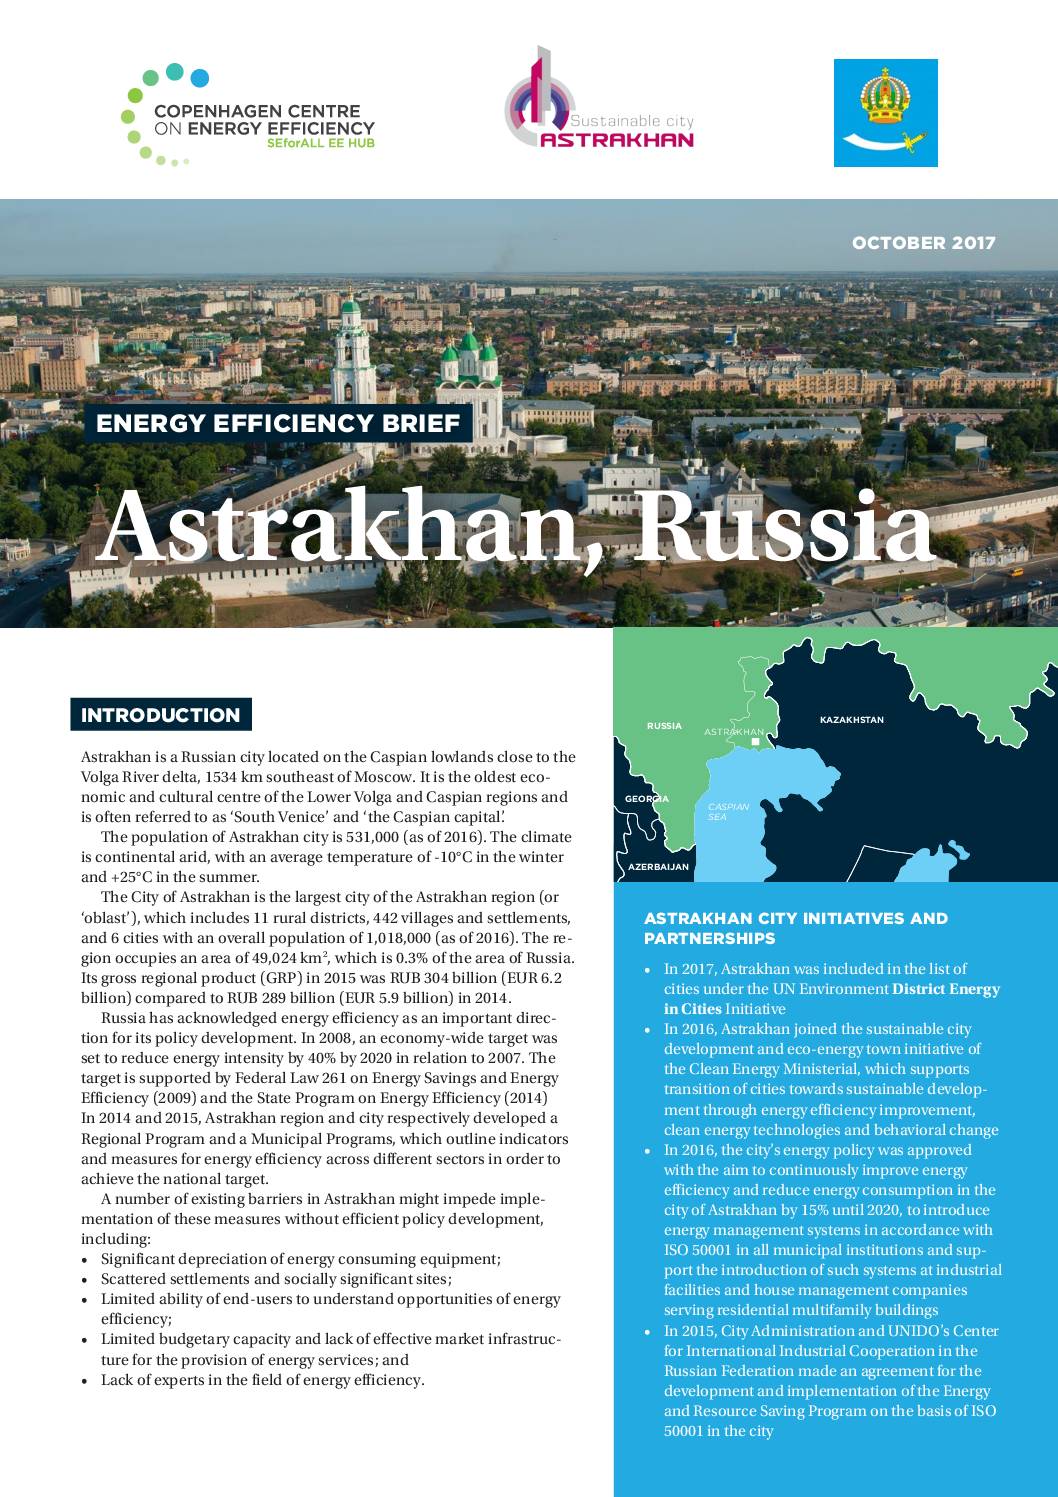 Energy Efficiency Brief, Astrakhan-Russia